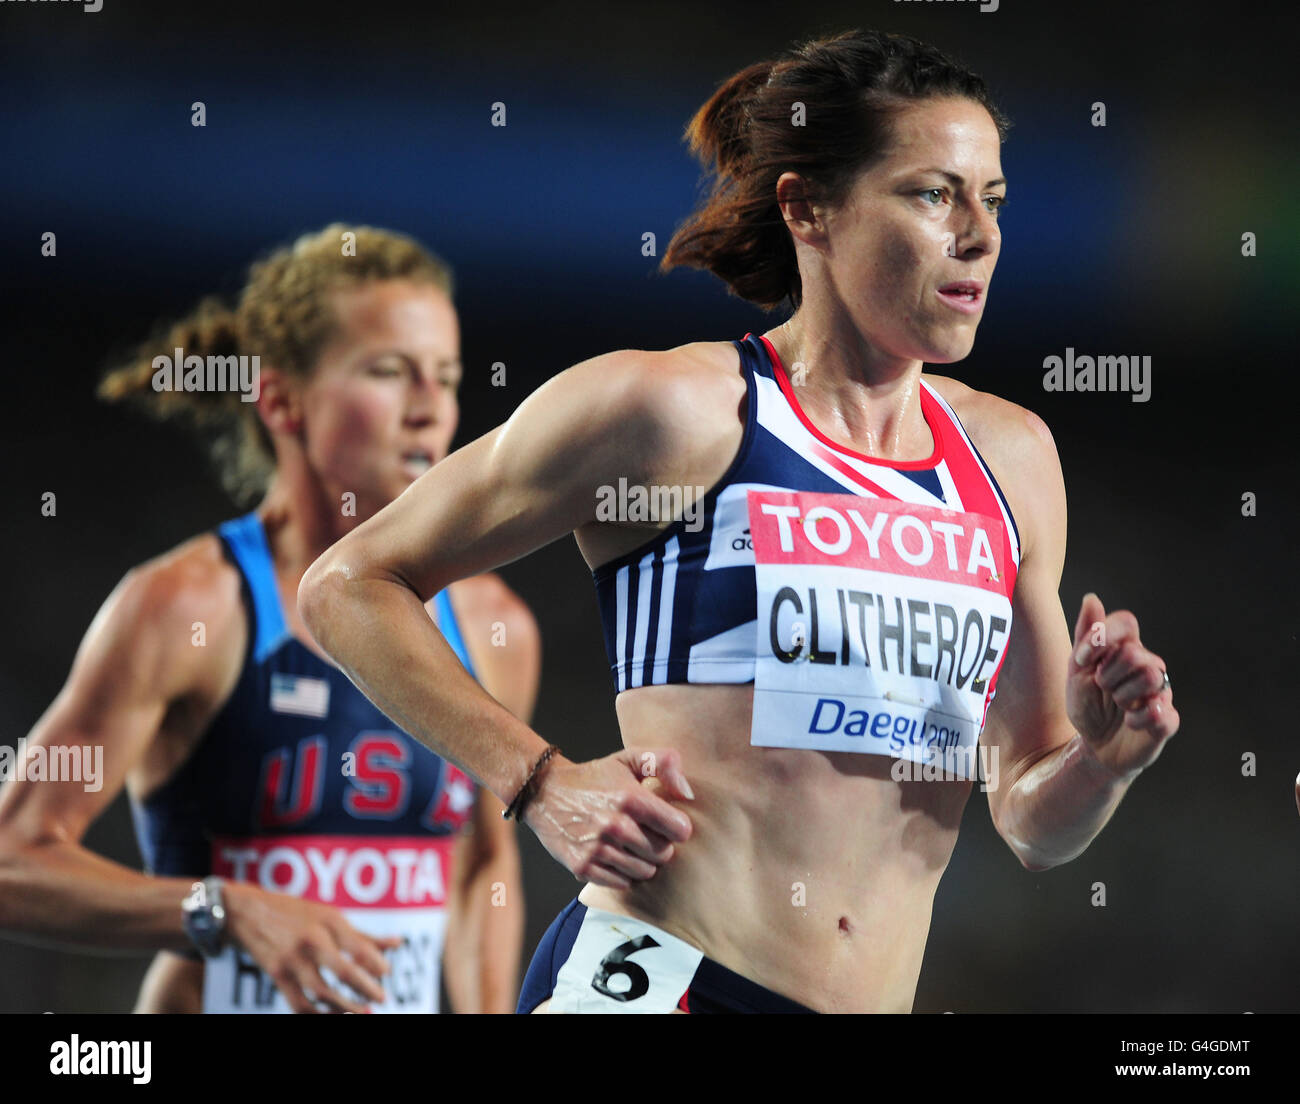 Athlétisme - Championnats du monde IAAF 2011 - septième jour - Daegu.Heather Clitheroe, en Grande-Bretagne, en lice pour la finale féminine de 5000m Banque D'Images